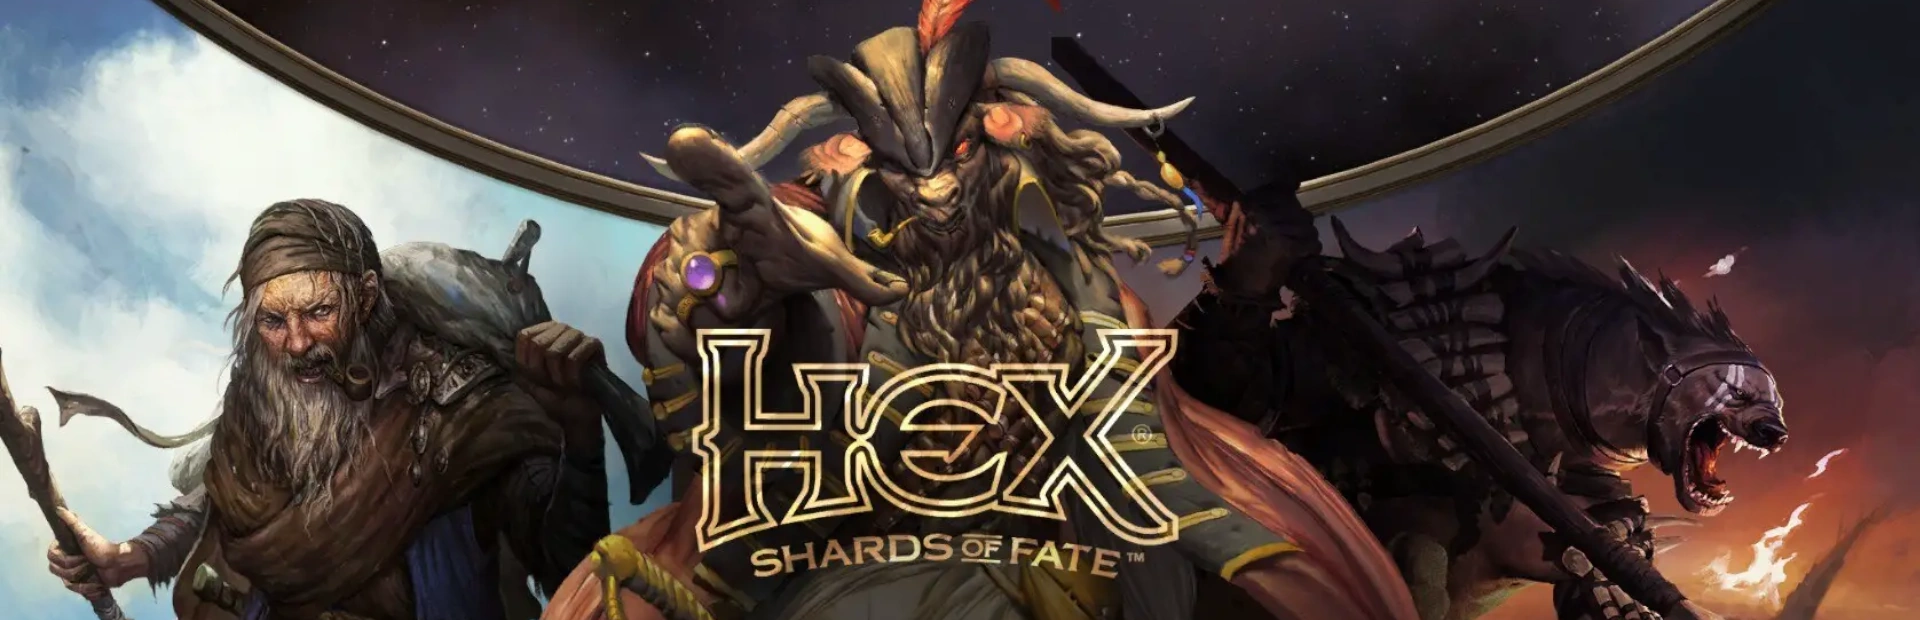 دانلود بازی HEX: Shards of Fate برای کامپیوتر | گیمباتو